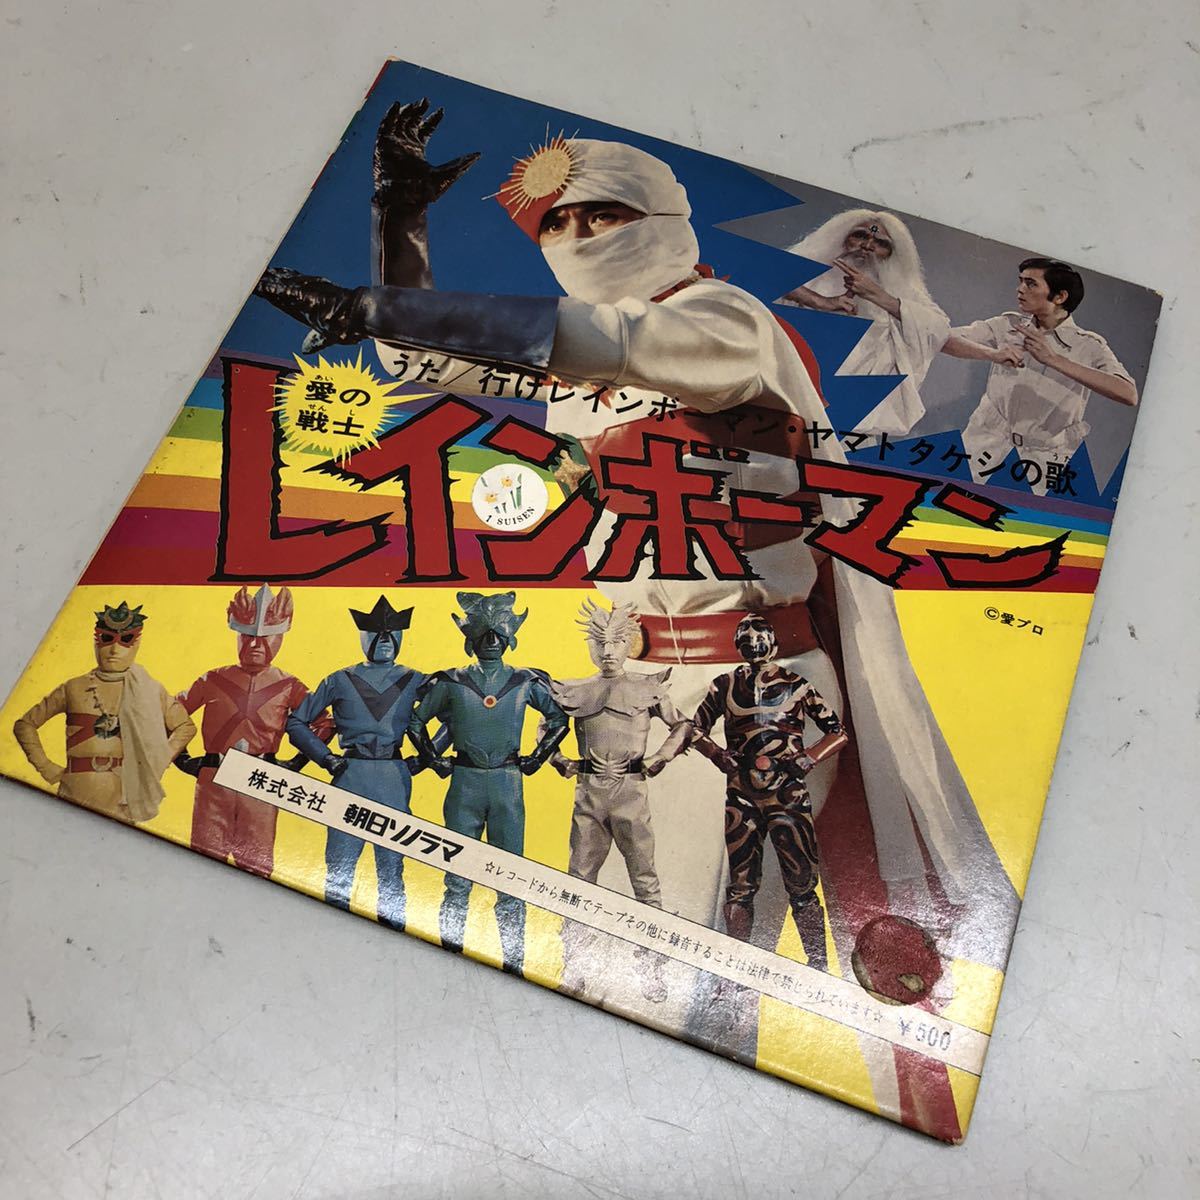  Return of Ultraman серебряный маска Rainbow man и т.п. Showa аниме retro L m запись книга@ совместно работоспособность не проверялась утиль 